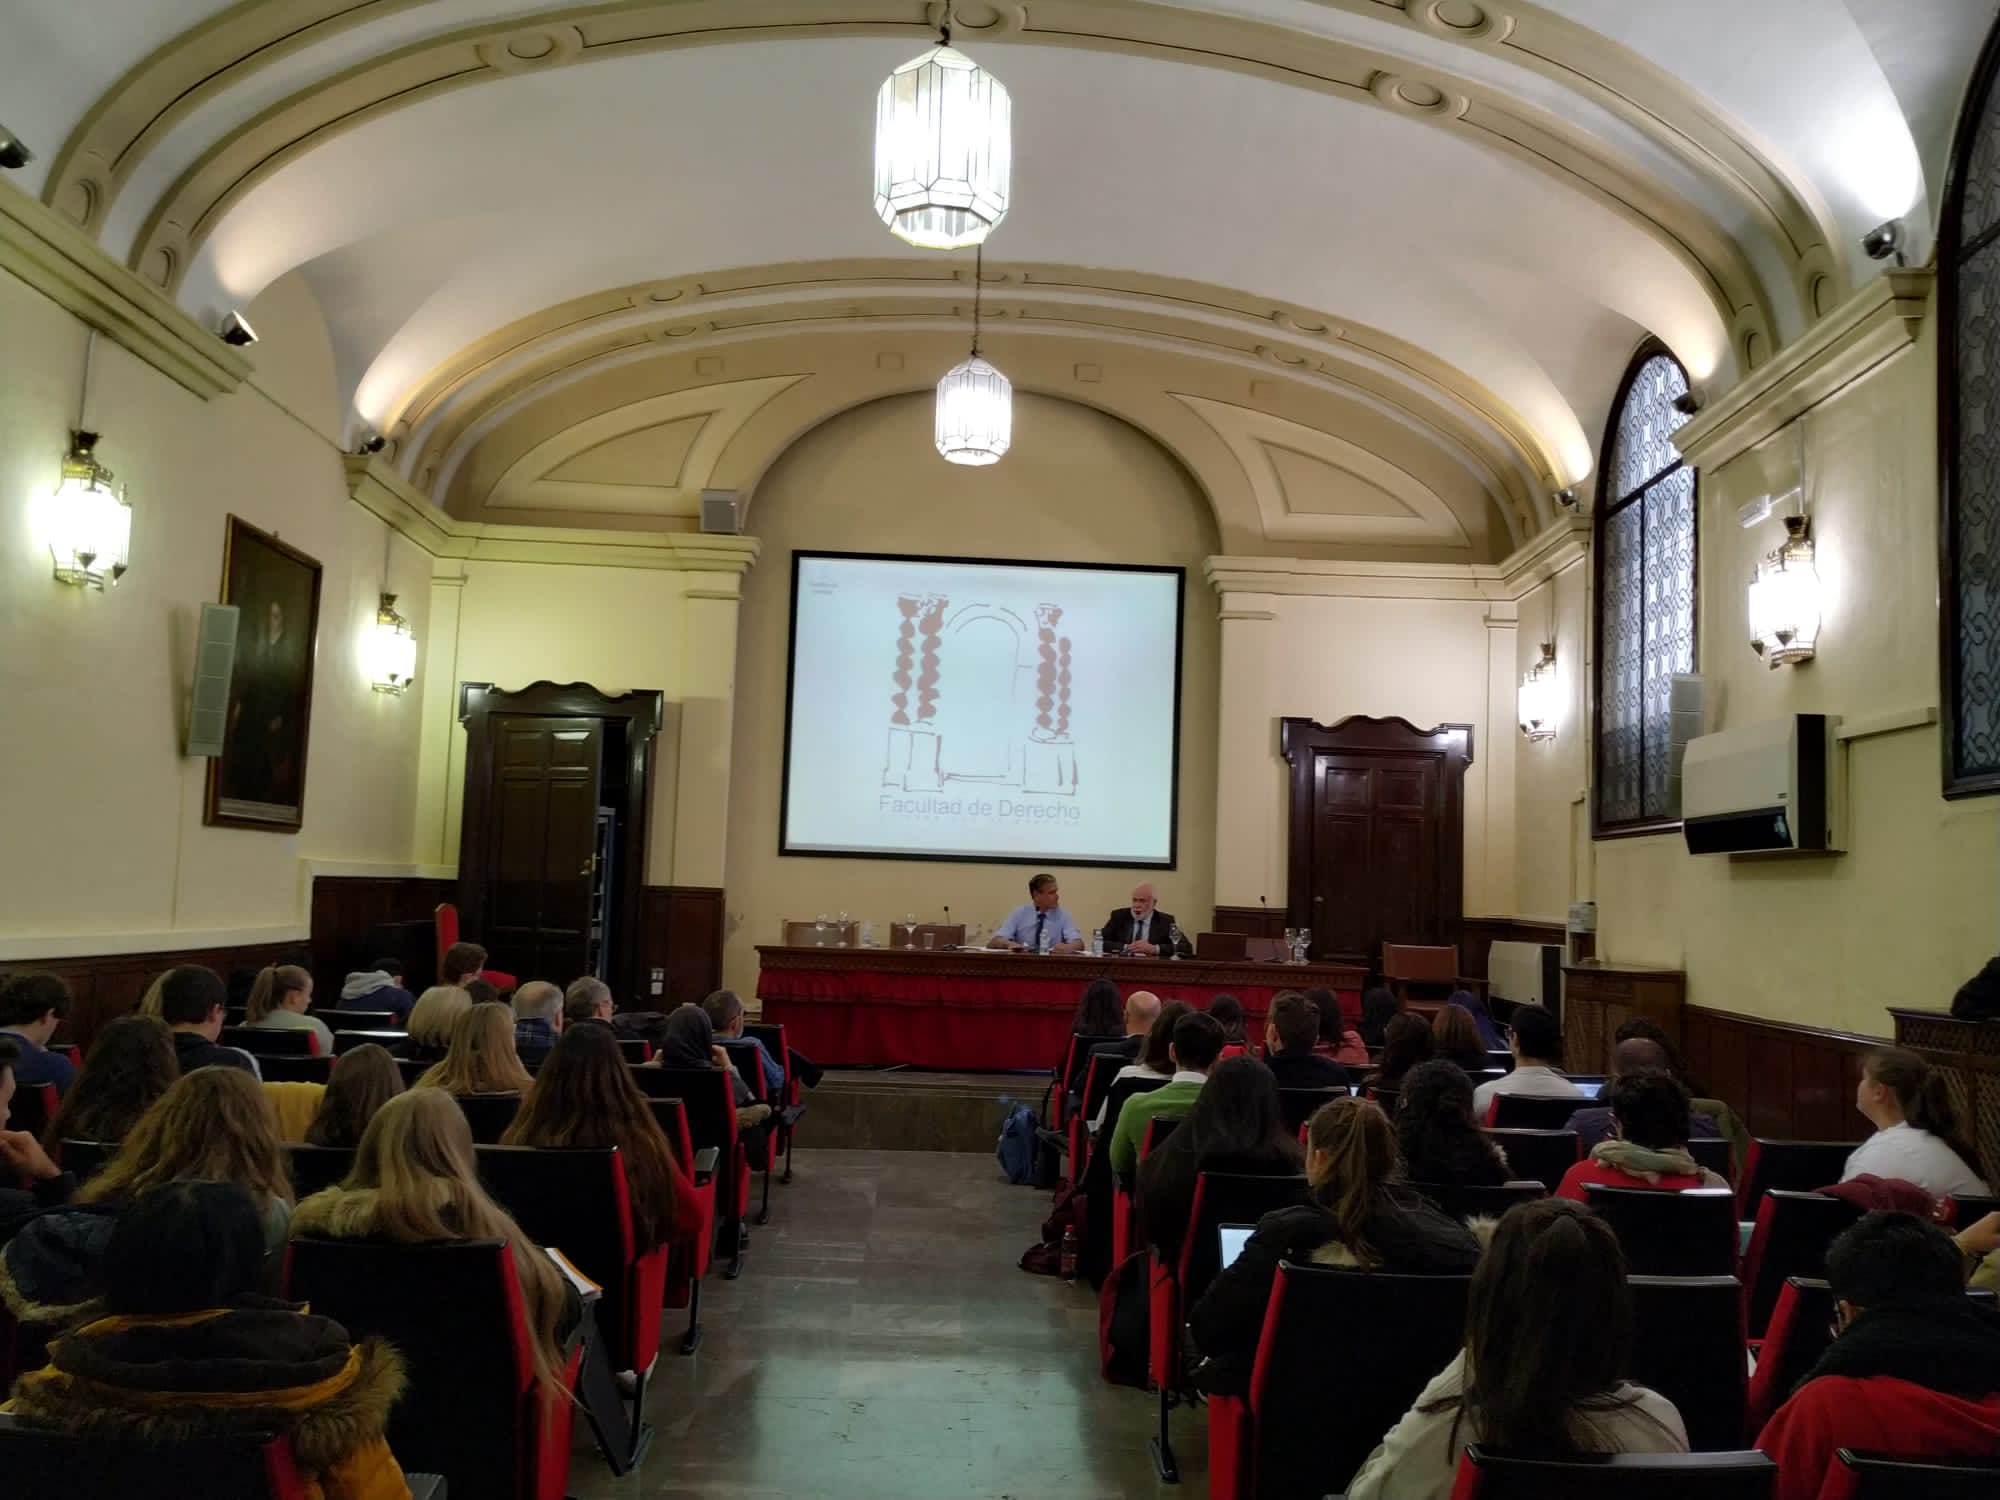 Imagen tomada desde el fondo de la sala en la que se puede ver la intervención del profesor López Aguilar en la conferencia